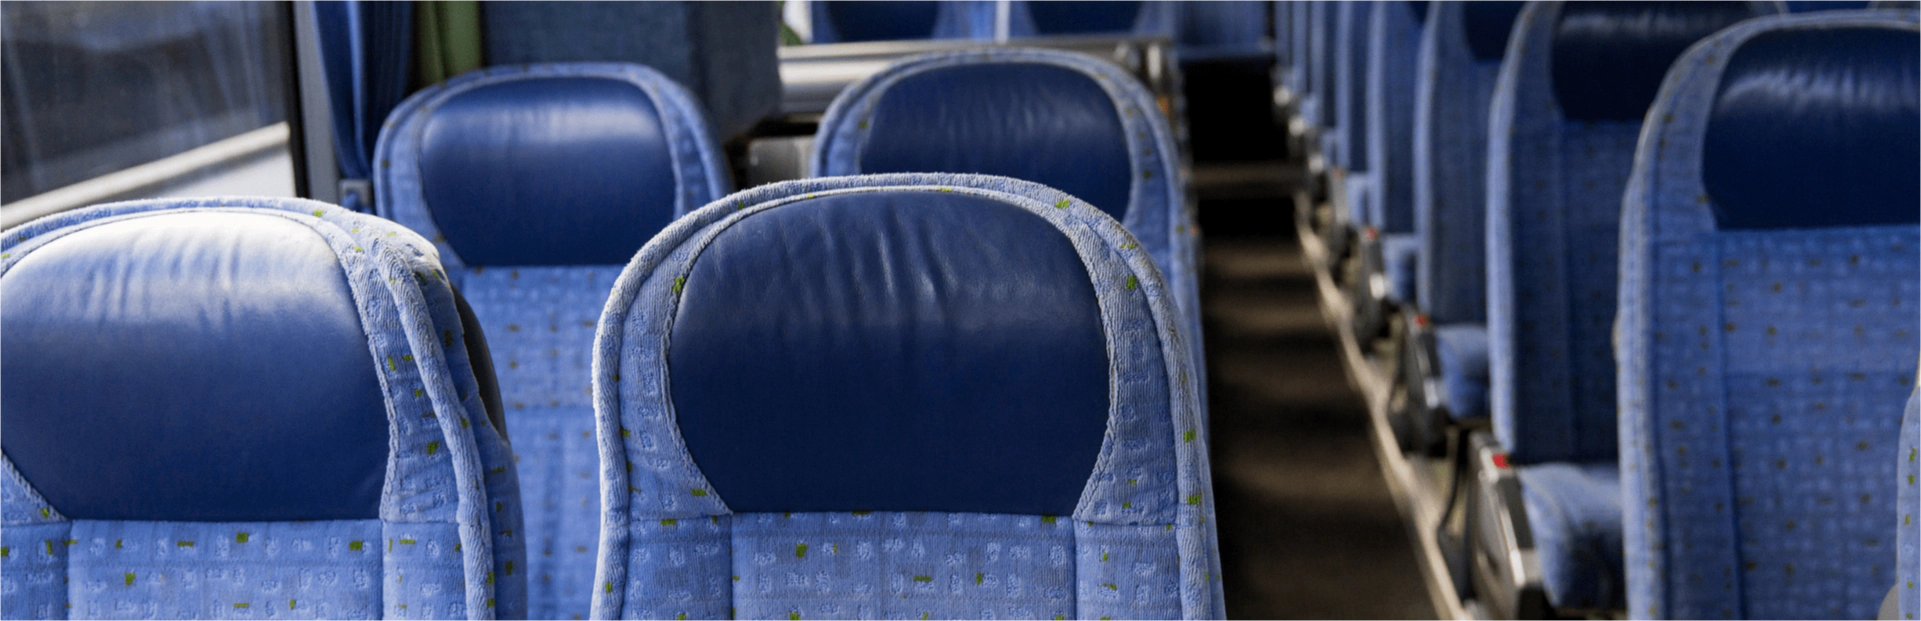 bus amenities breadcrumb hero opt